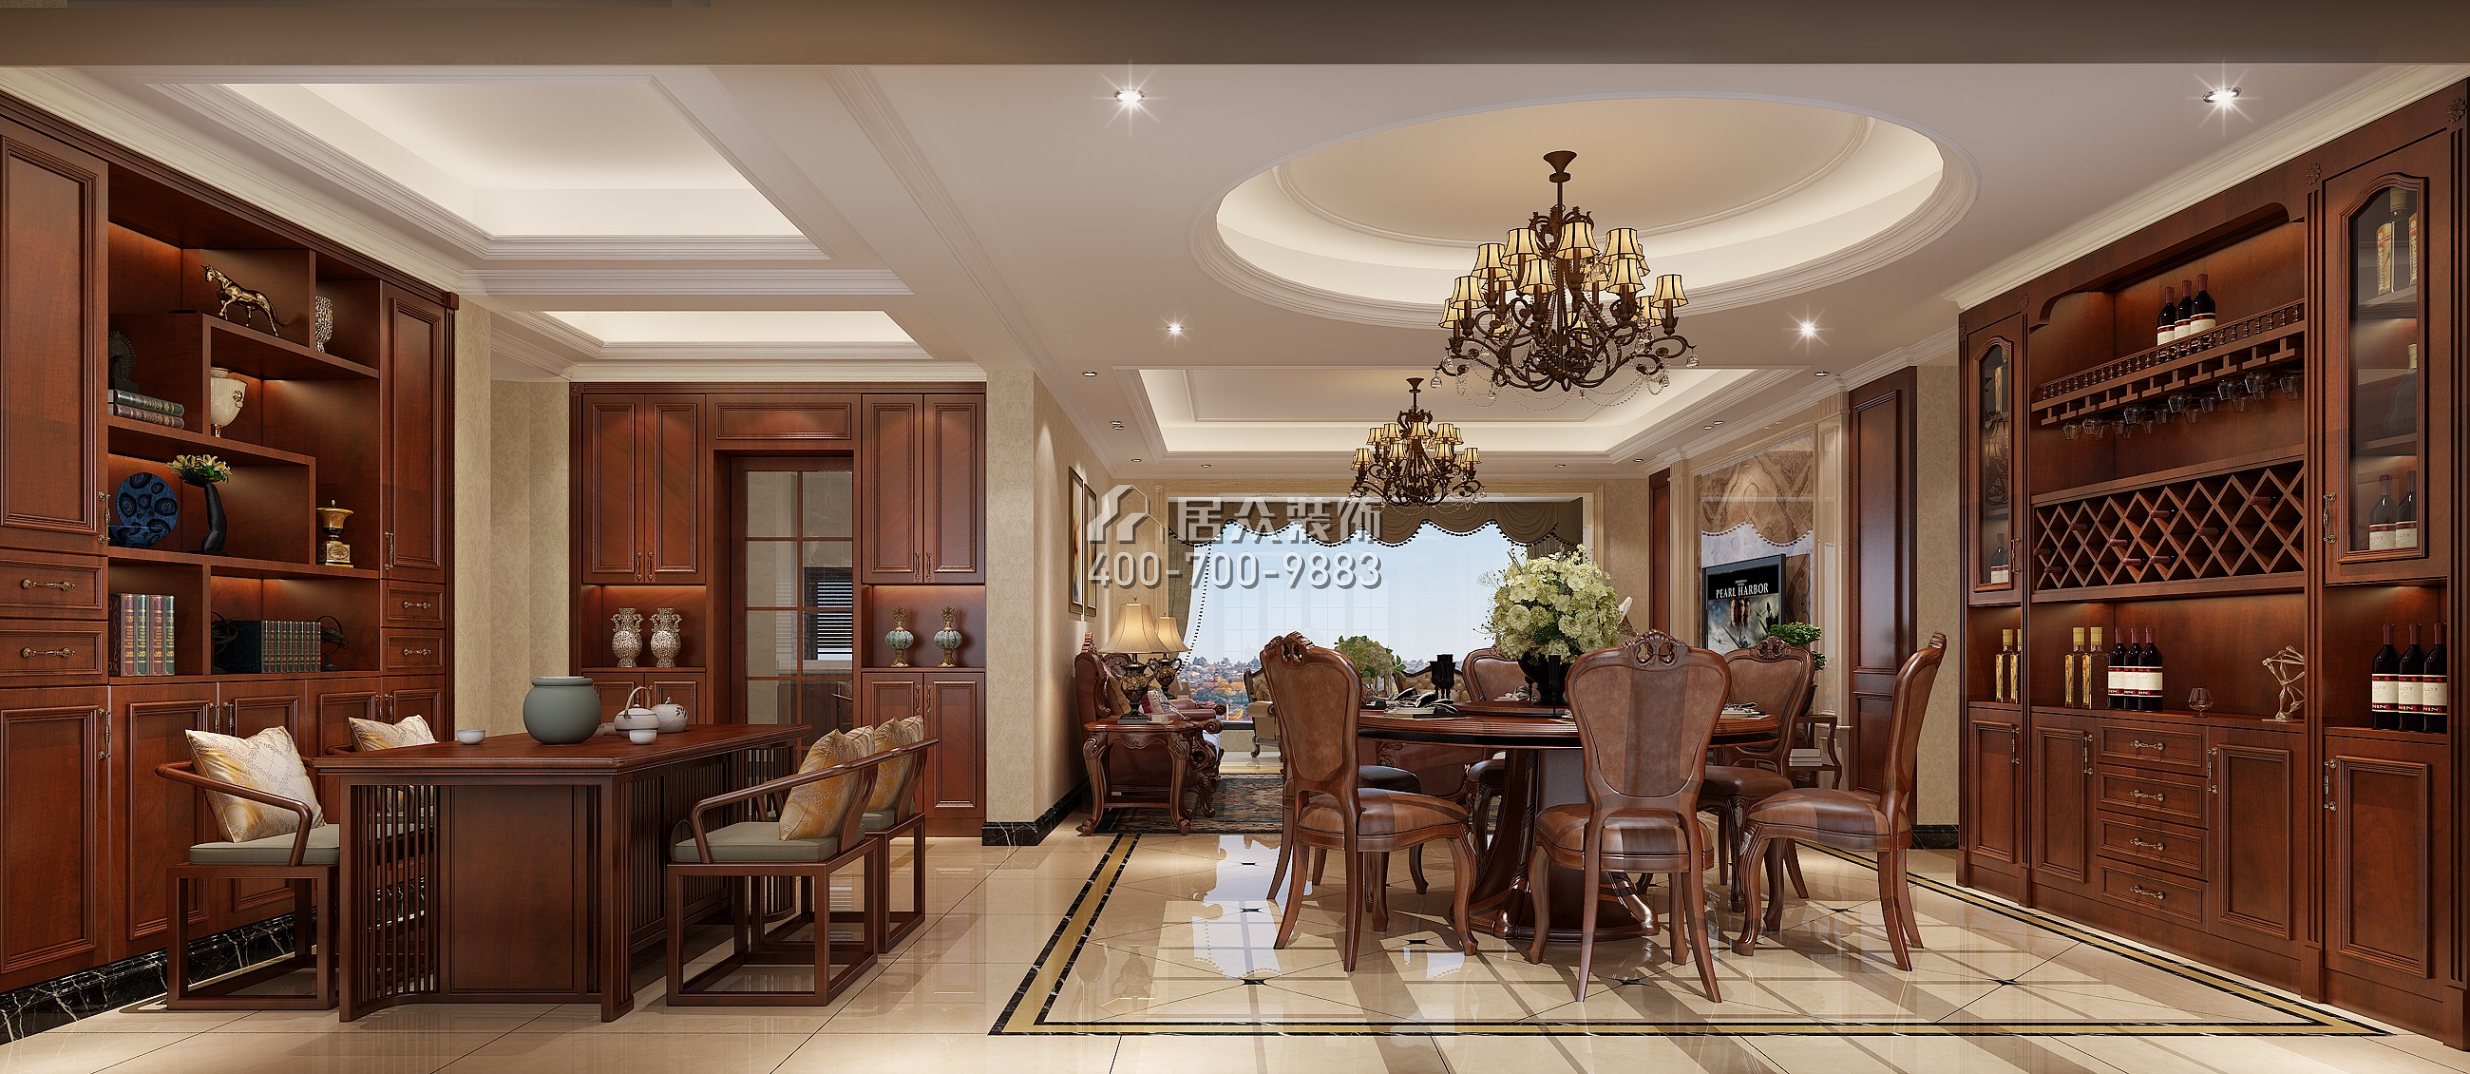 星河丹堤180平方米欧式风格平层户型餐厅装修效果图